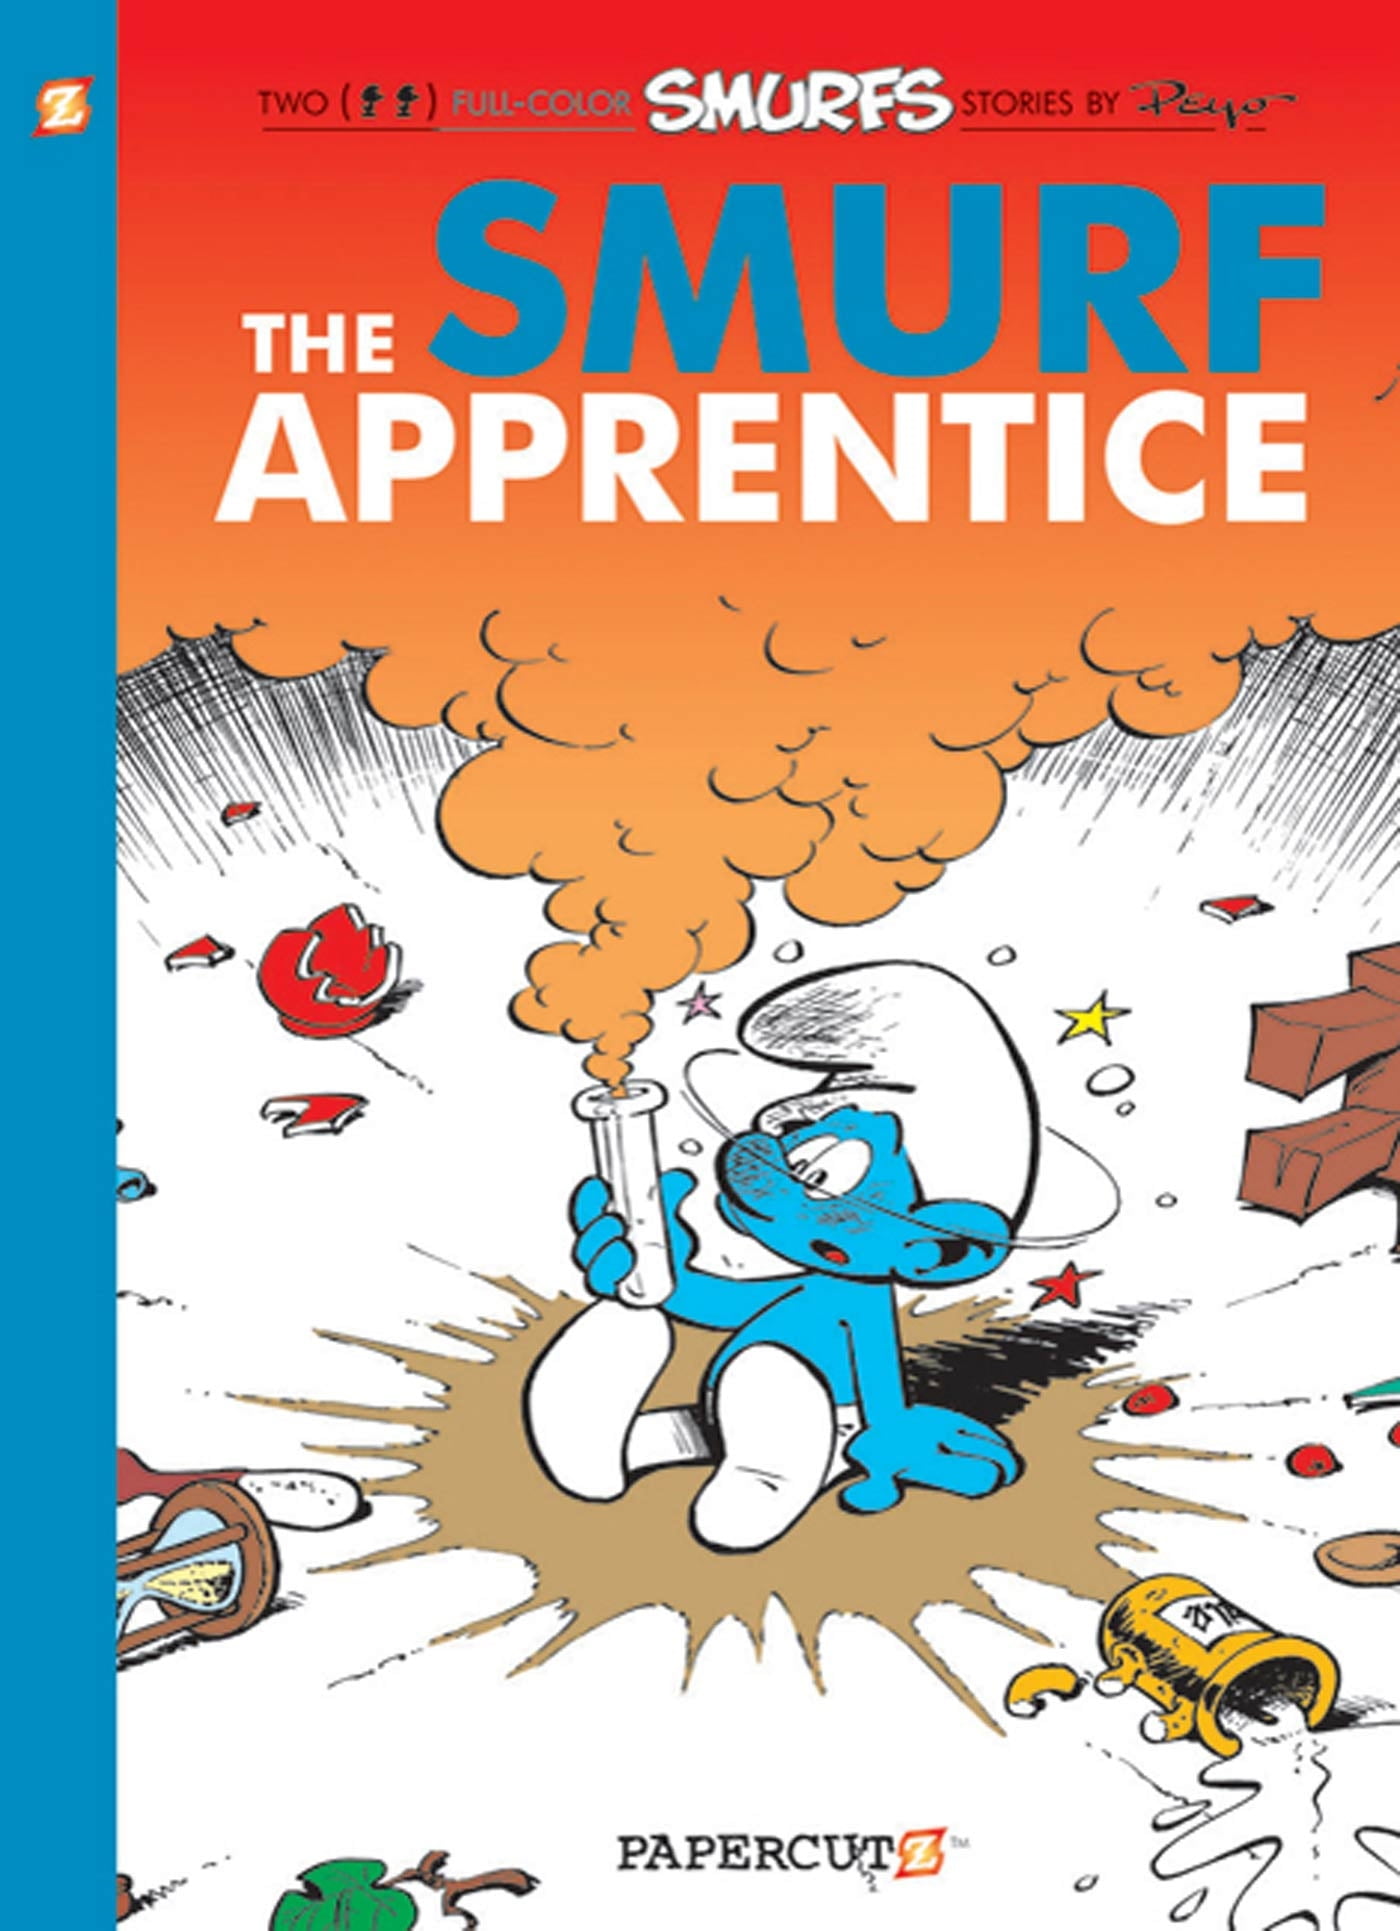 Novels　(Paperback):　The　Apprentice　The　Smurf　Smurfs　#8:　The　Graphic　Apprentice　(Series　#08)　(Paperback)　Smurfs　Smurf